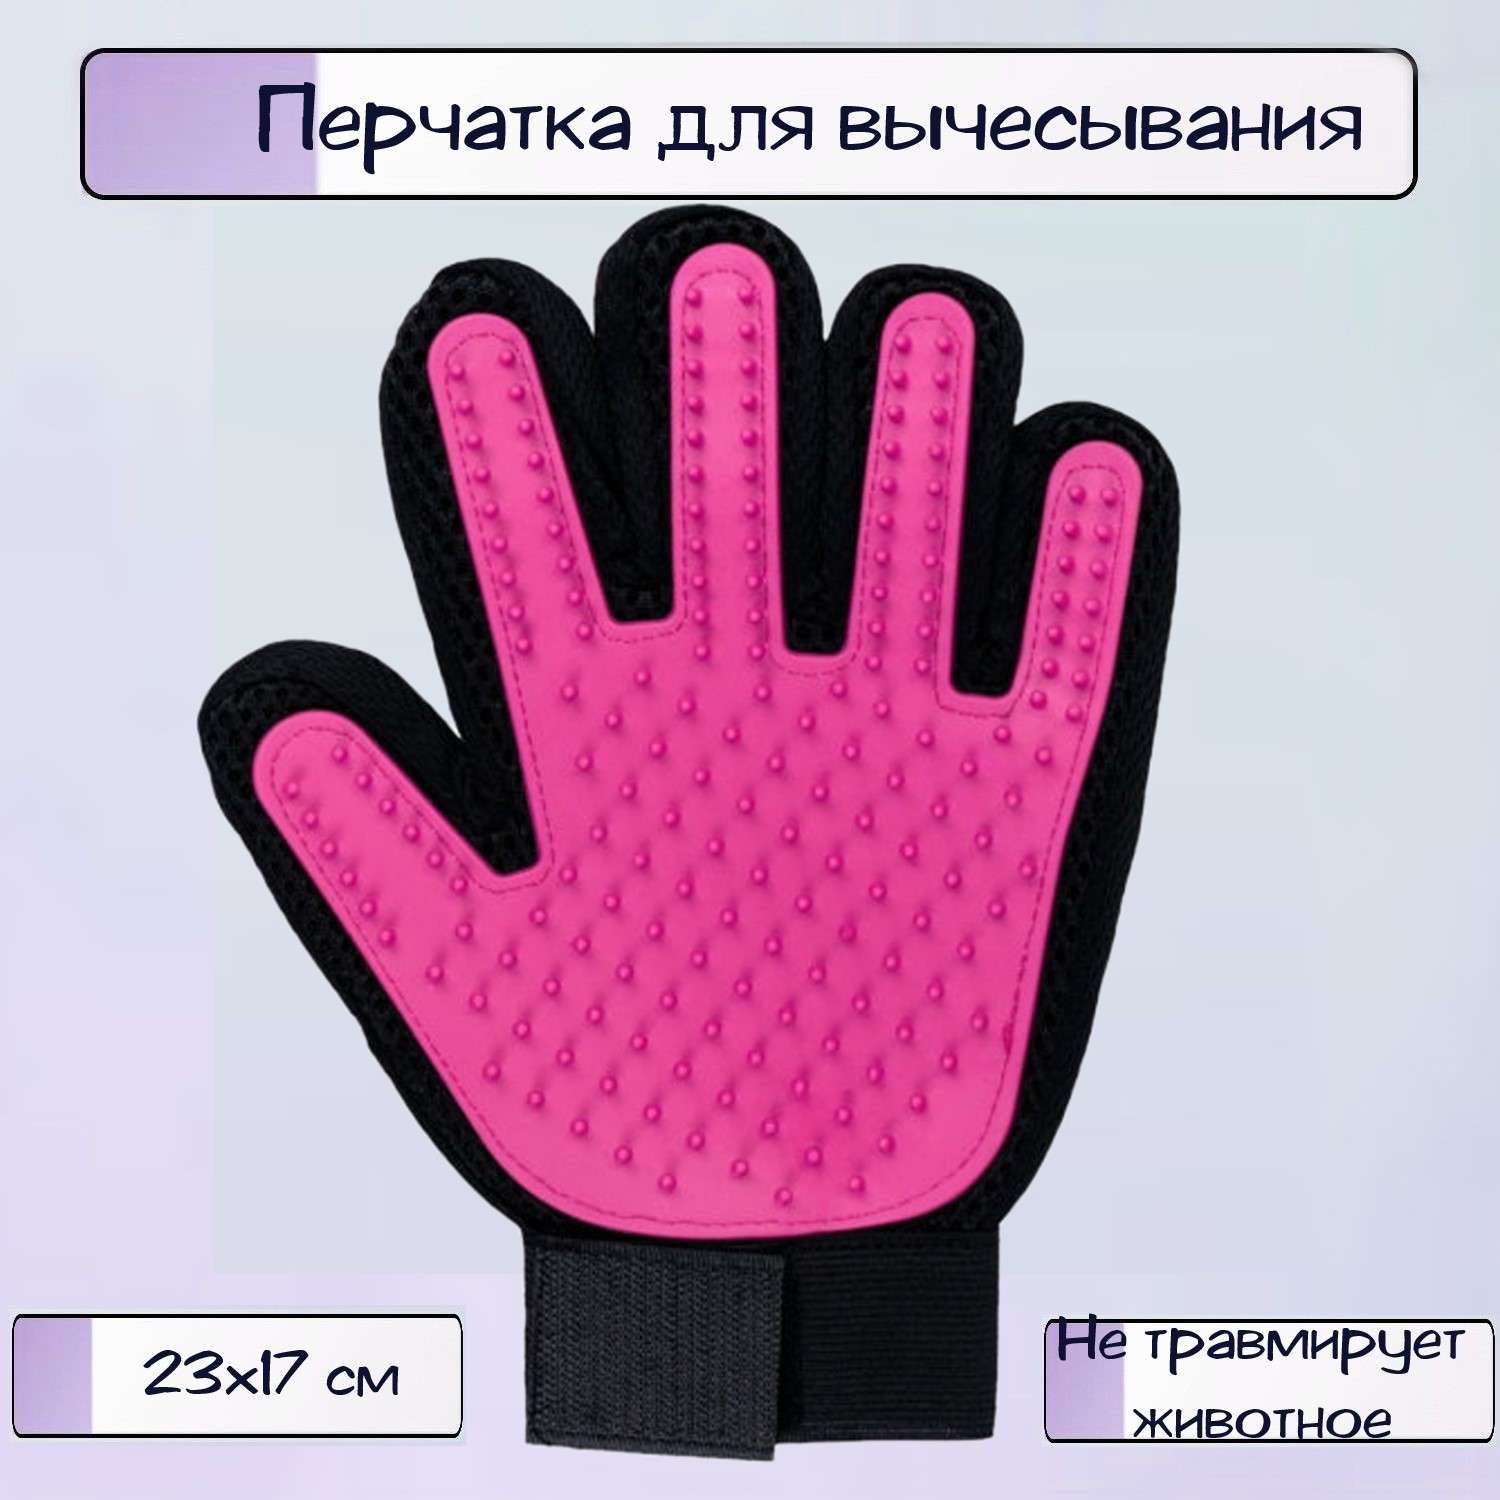 Перчатка для кошек и собак Ripoma для вычесывания шерсти цвет розовый - фото 1